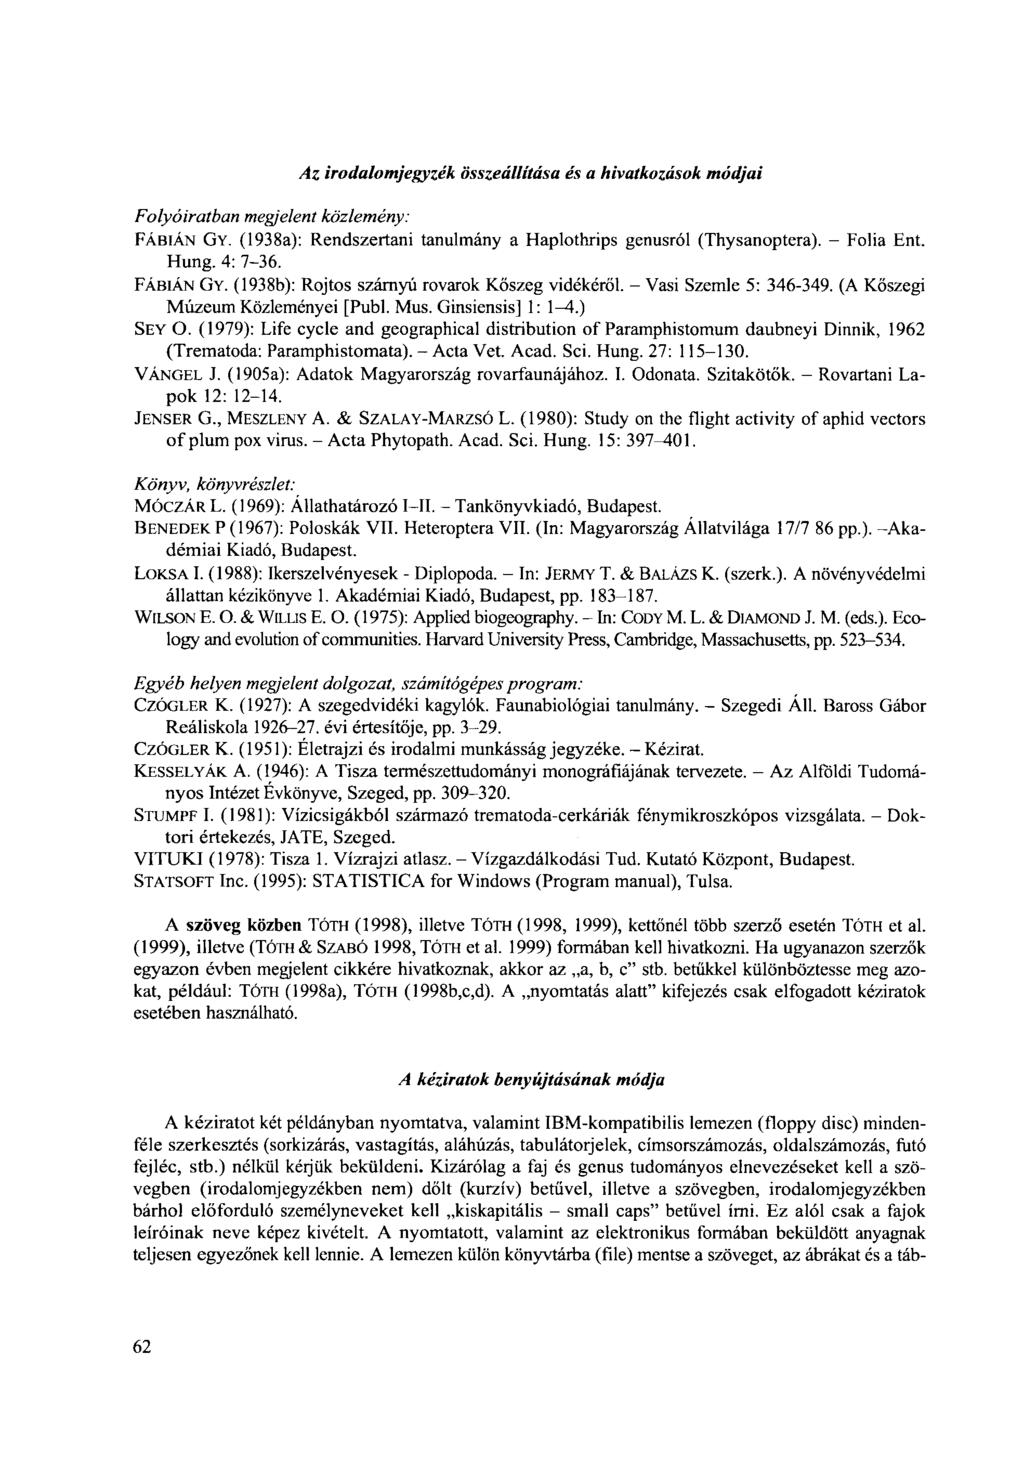 Folyóiratban megjelent Az irodalomjegyzék összeállítása és a hivatkozások módjai közlemény: FÁBIÁN GY. (1938a): Rendszertani tanulmány a Haplothrips genusról (Thysanoptera). - Folia Ent. Hung.